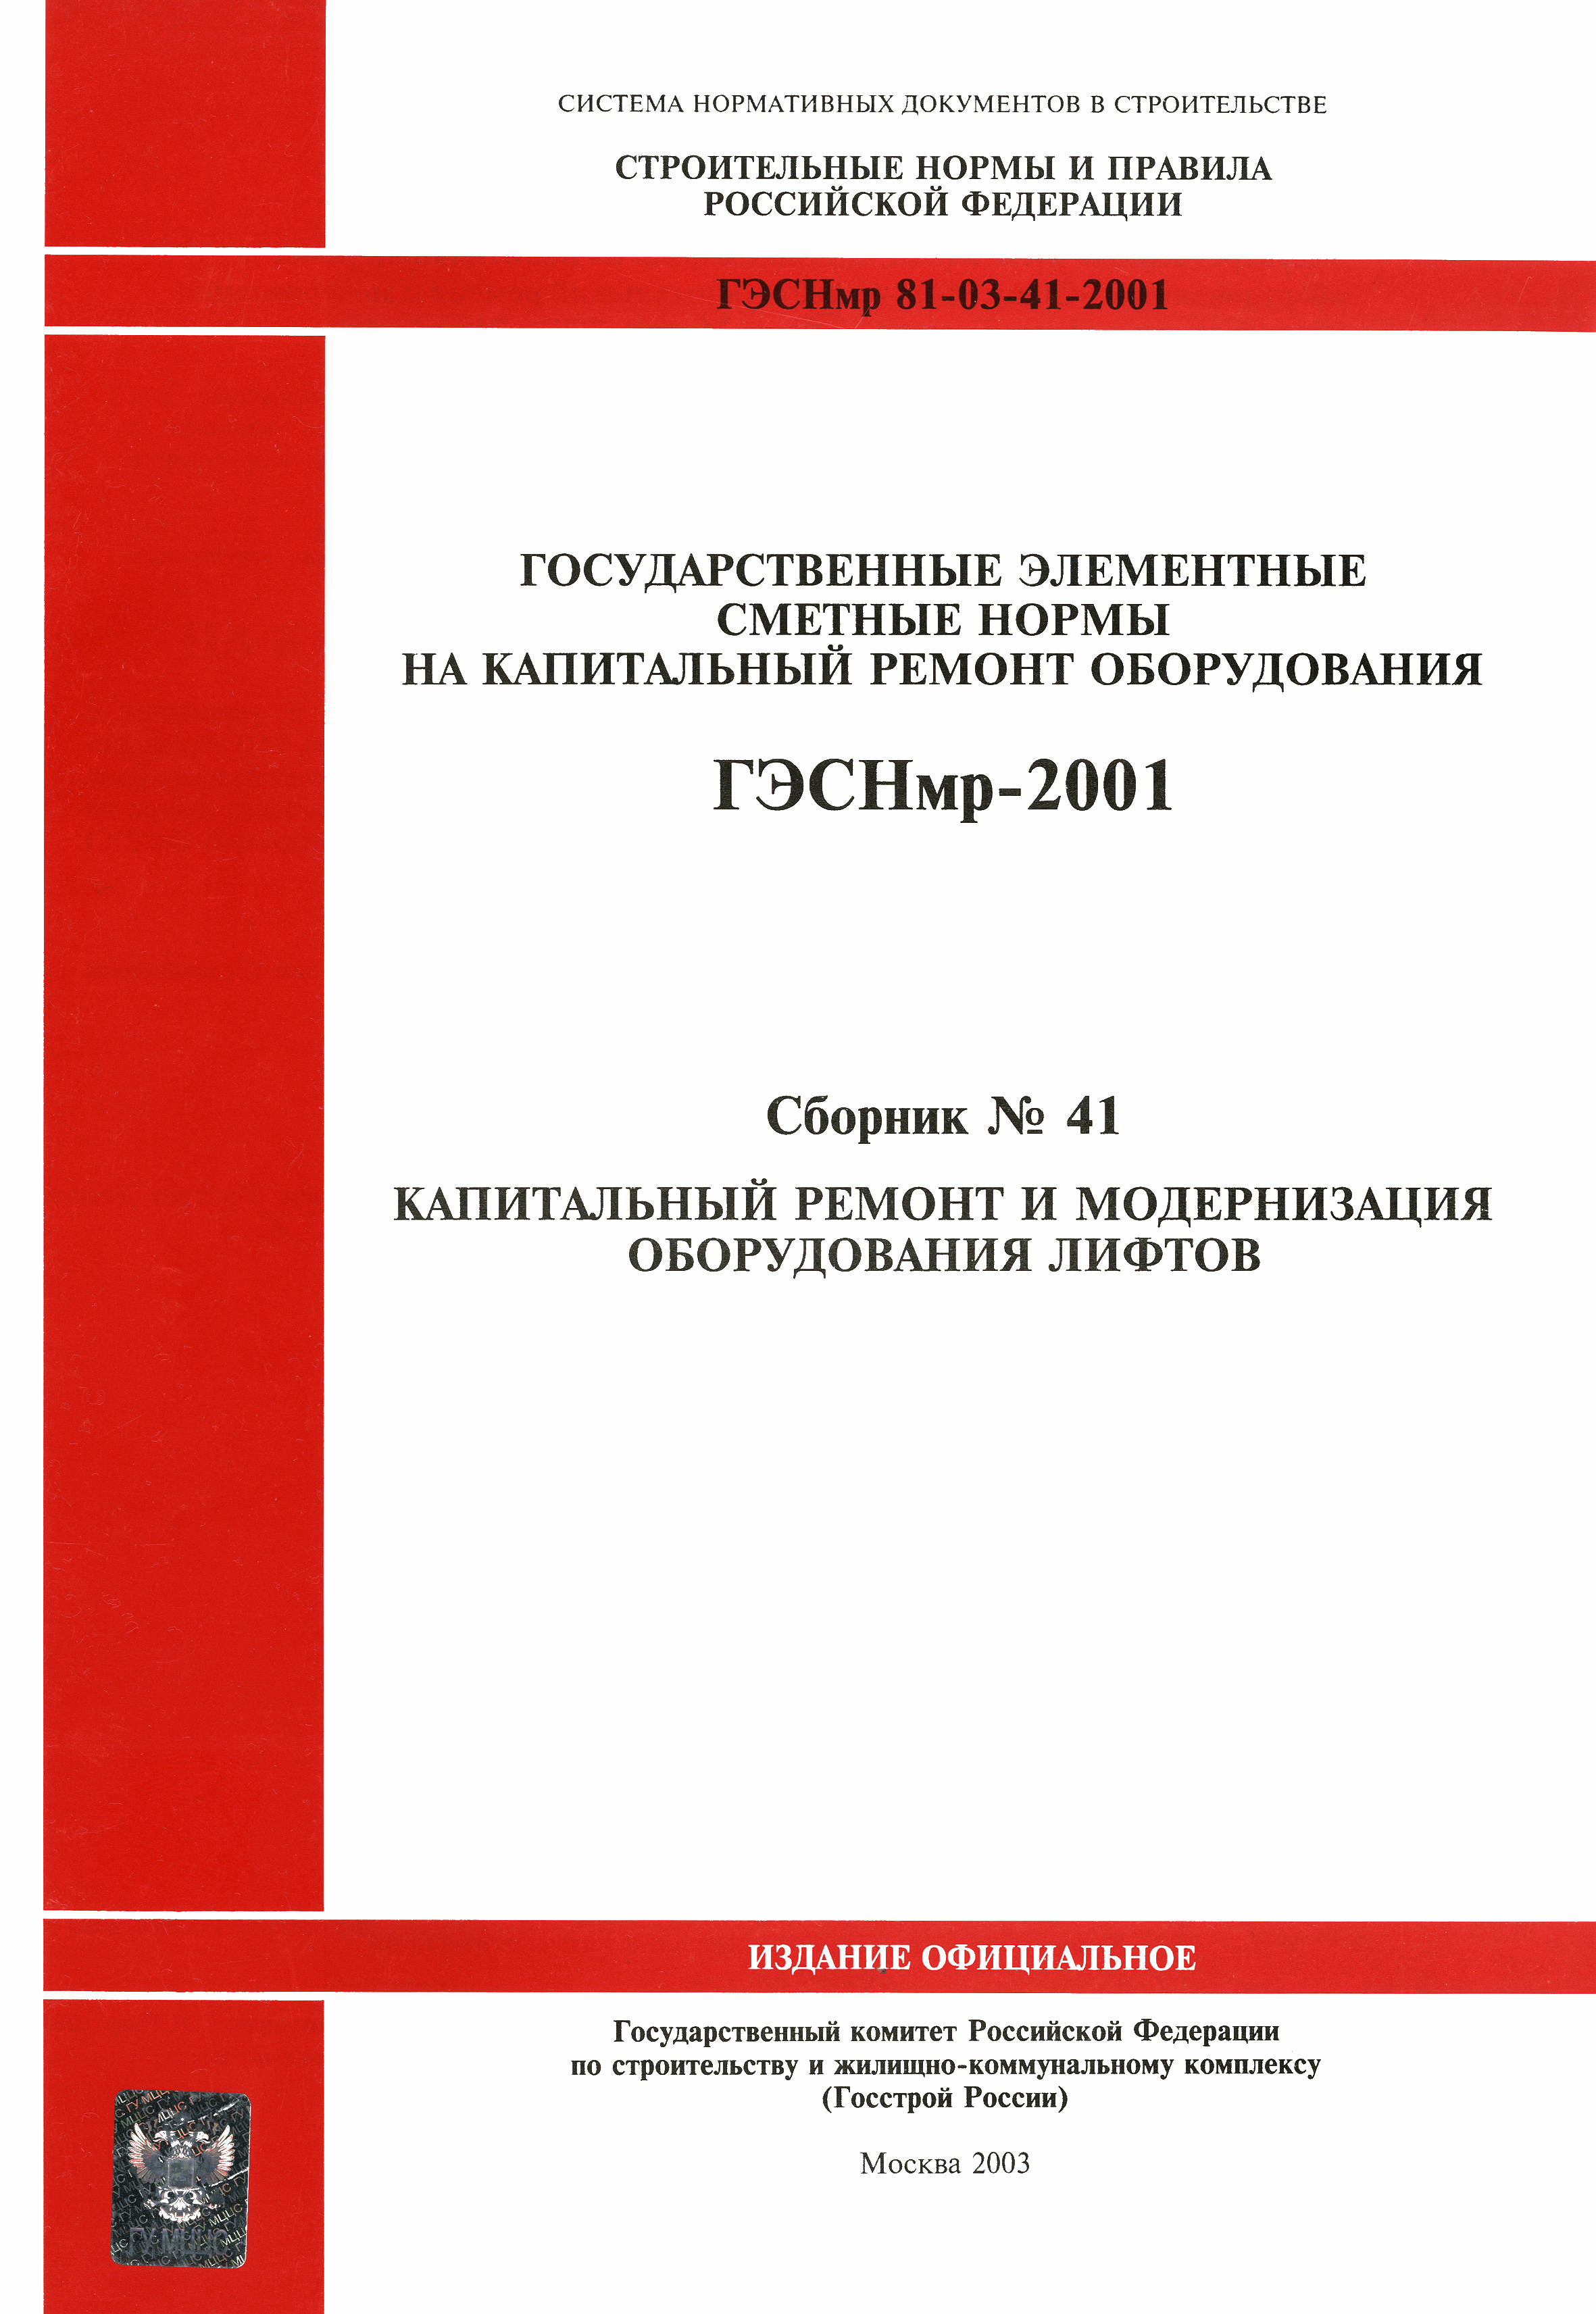 ГЭСНмр 2001-41